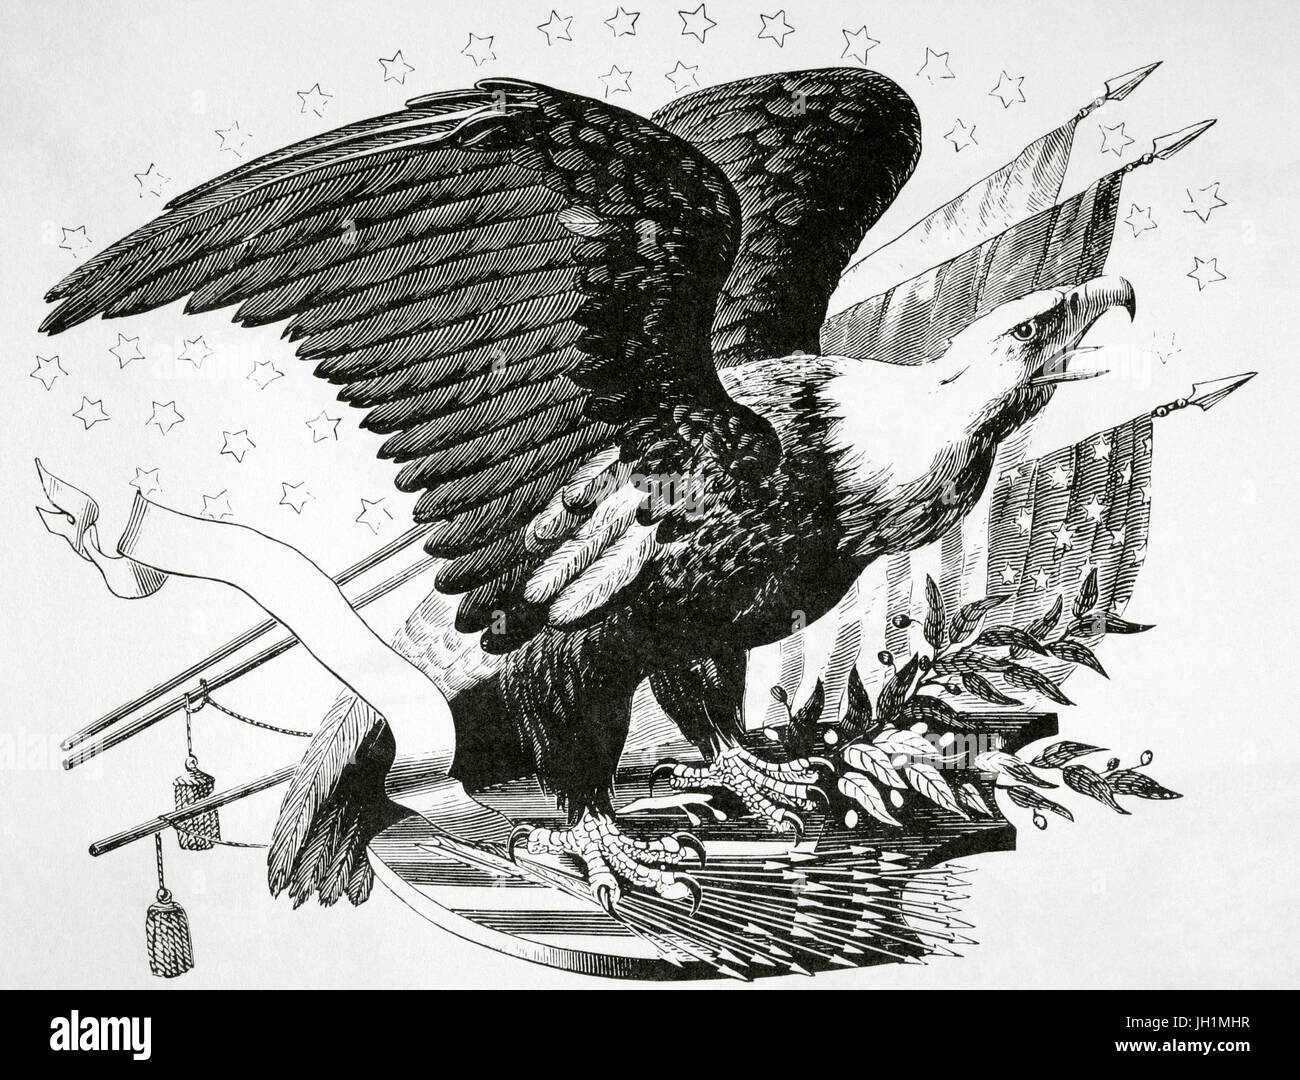 Weißkopf-Seeadler und andere patriotische Symbole des amerikanischen Unabhängigkeitskrieges (1775-1783). Gravur in der amerikanischen Revolution des 19. Jahrhunderts. Stockfoto